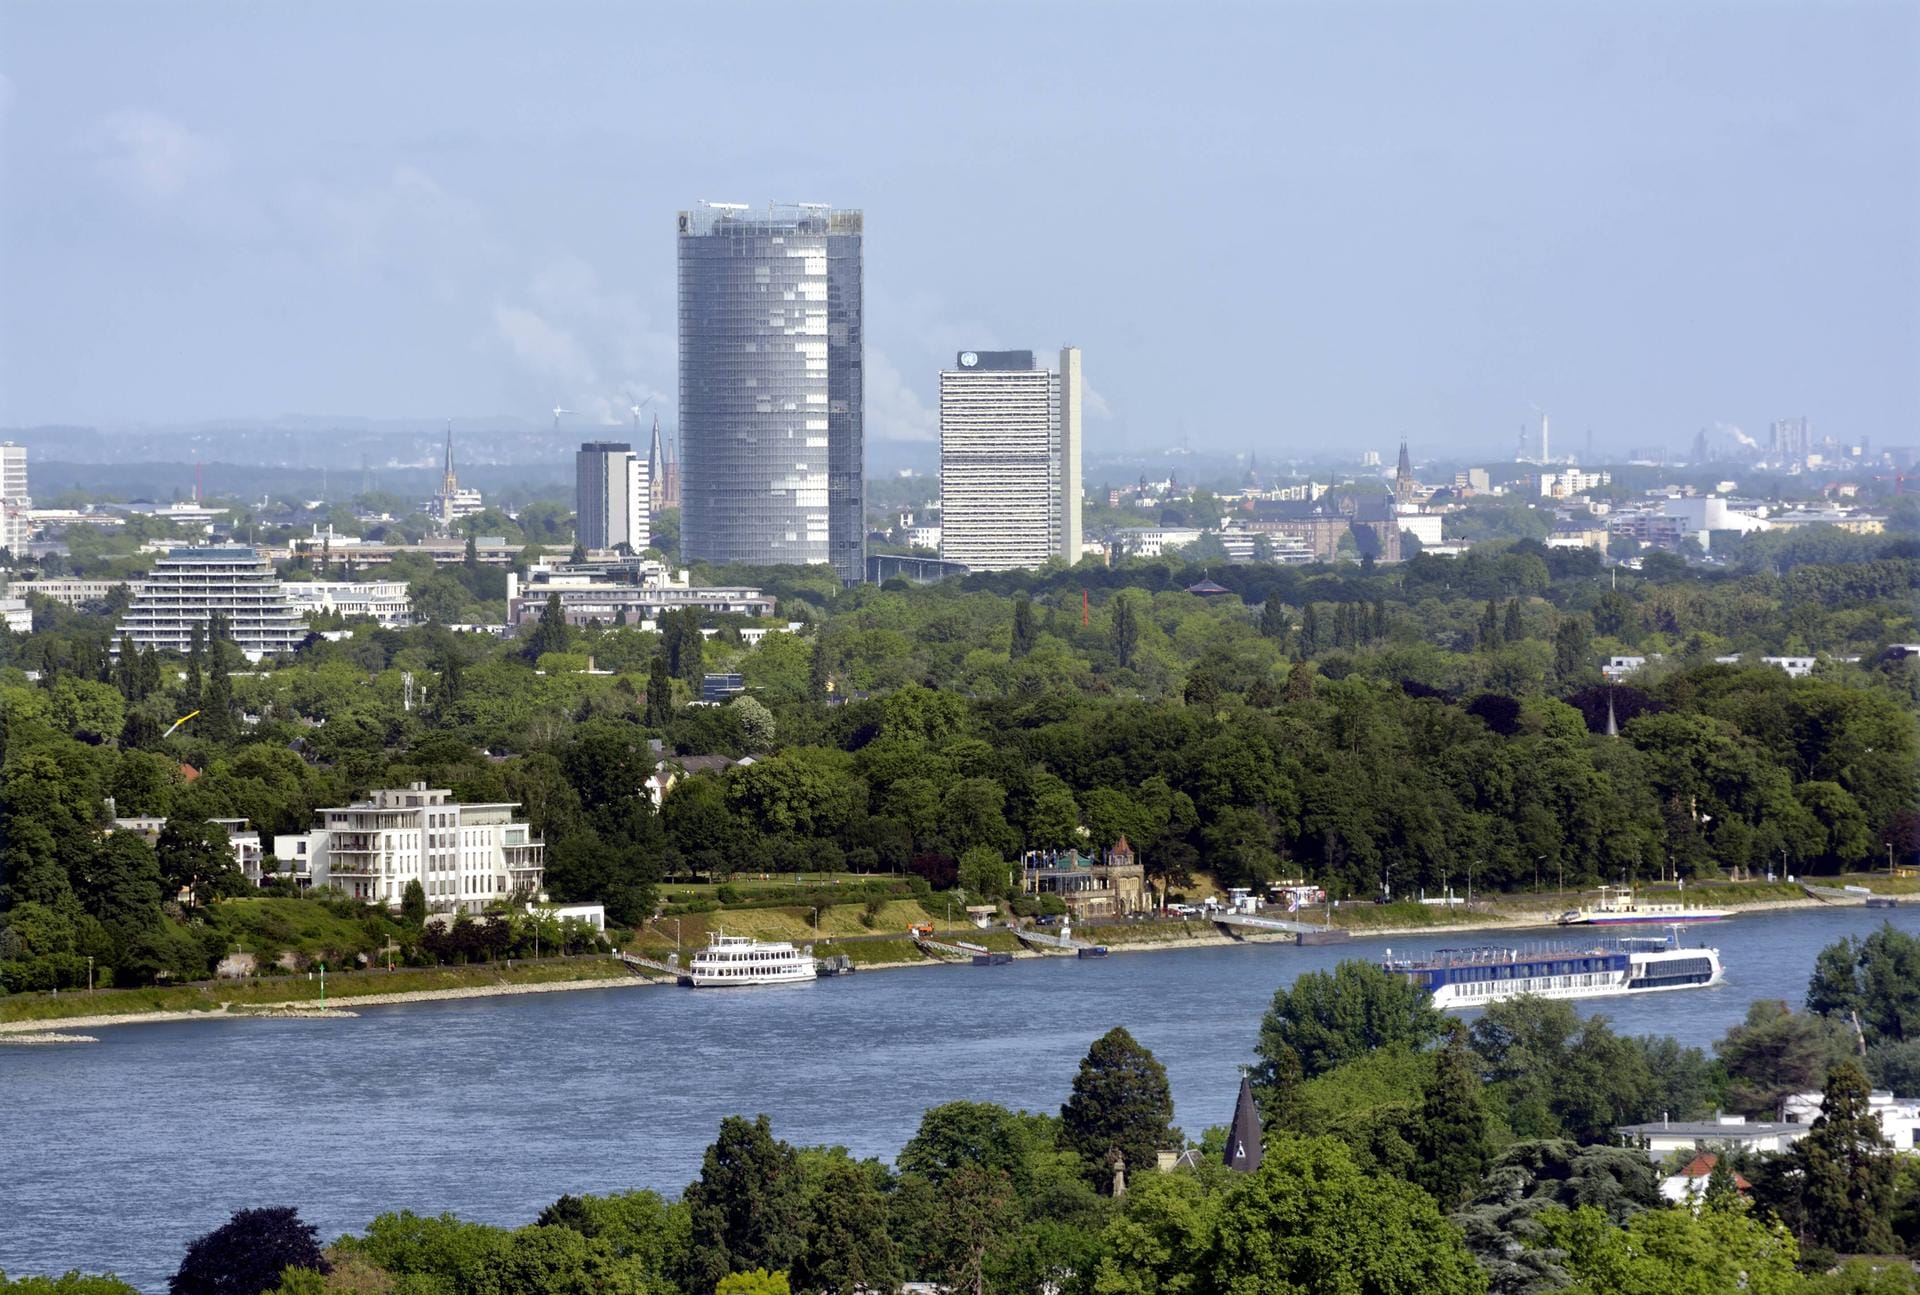 Blick auf Bonn am Rhein (Platz 5) mit dem Post-Tower. Die Bevölkerung wird bis 2030 laut Studie um 3,69 Prozent wachsen, die Preise für Eigentumswohnungen werden im Schnitt um gut 12 Prozent steigen.